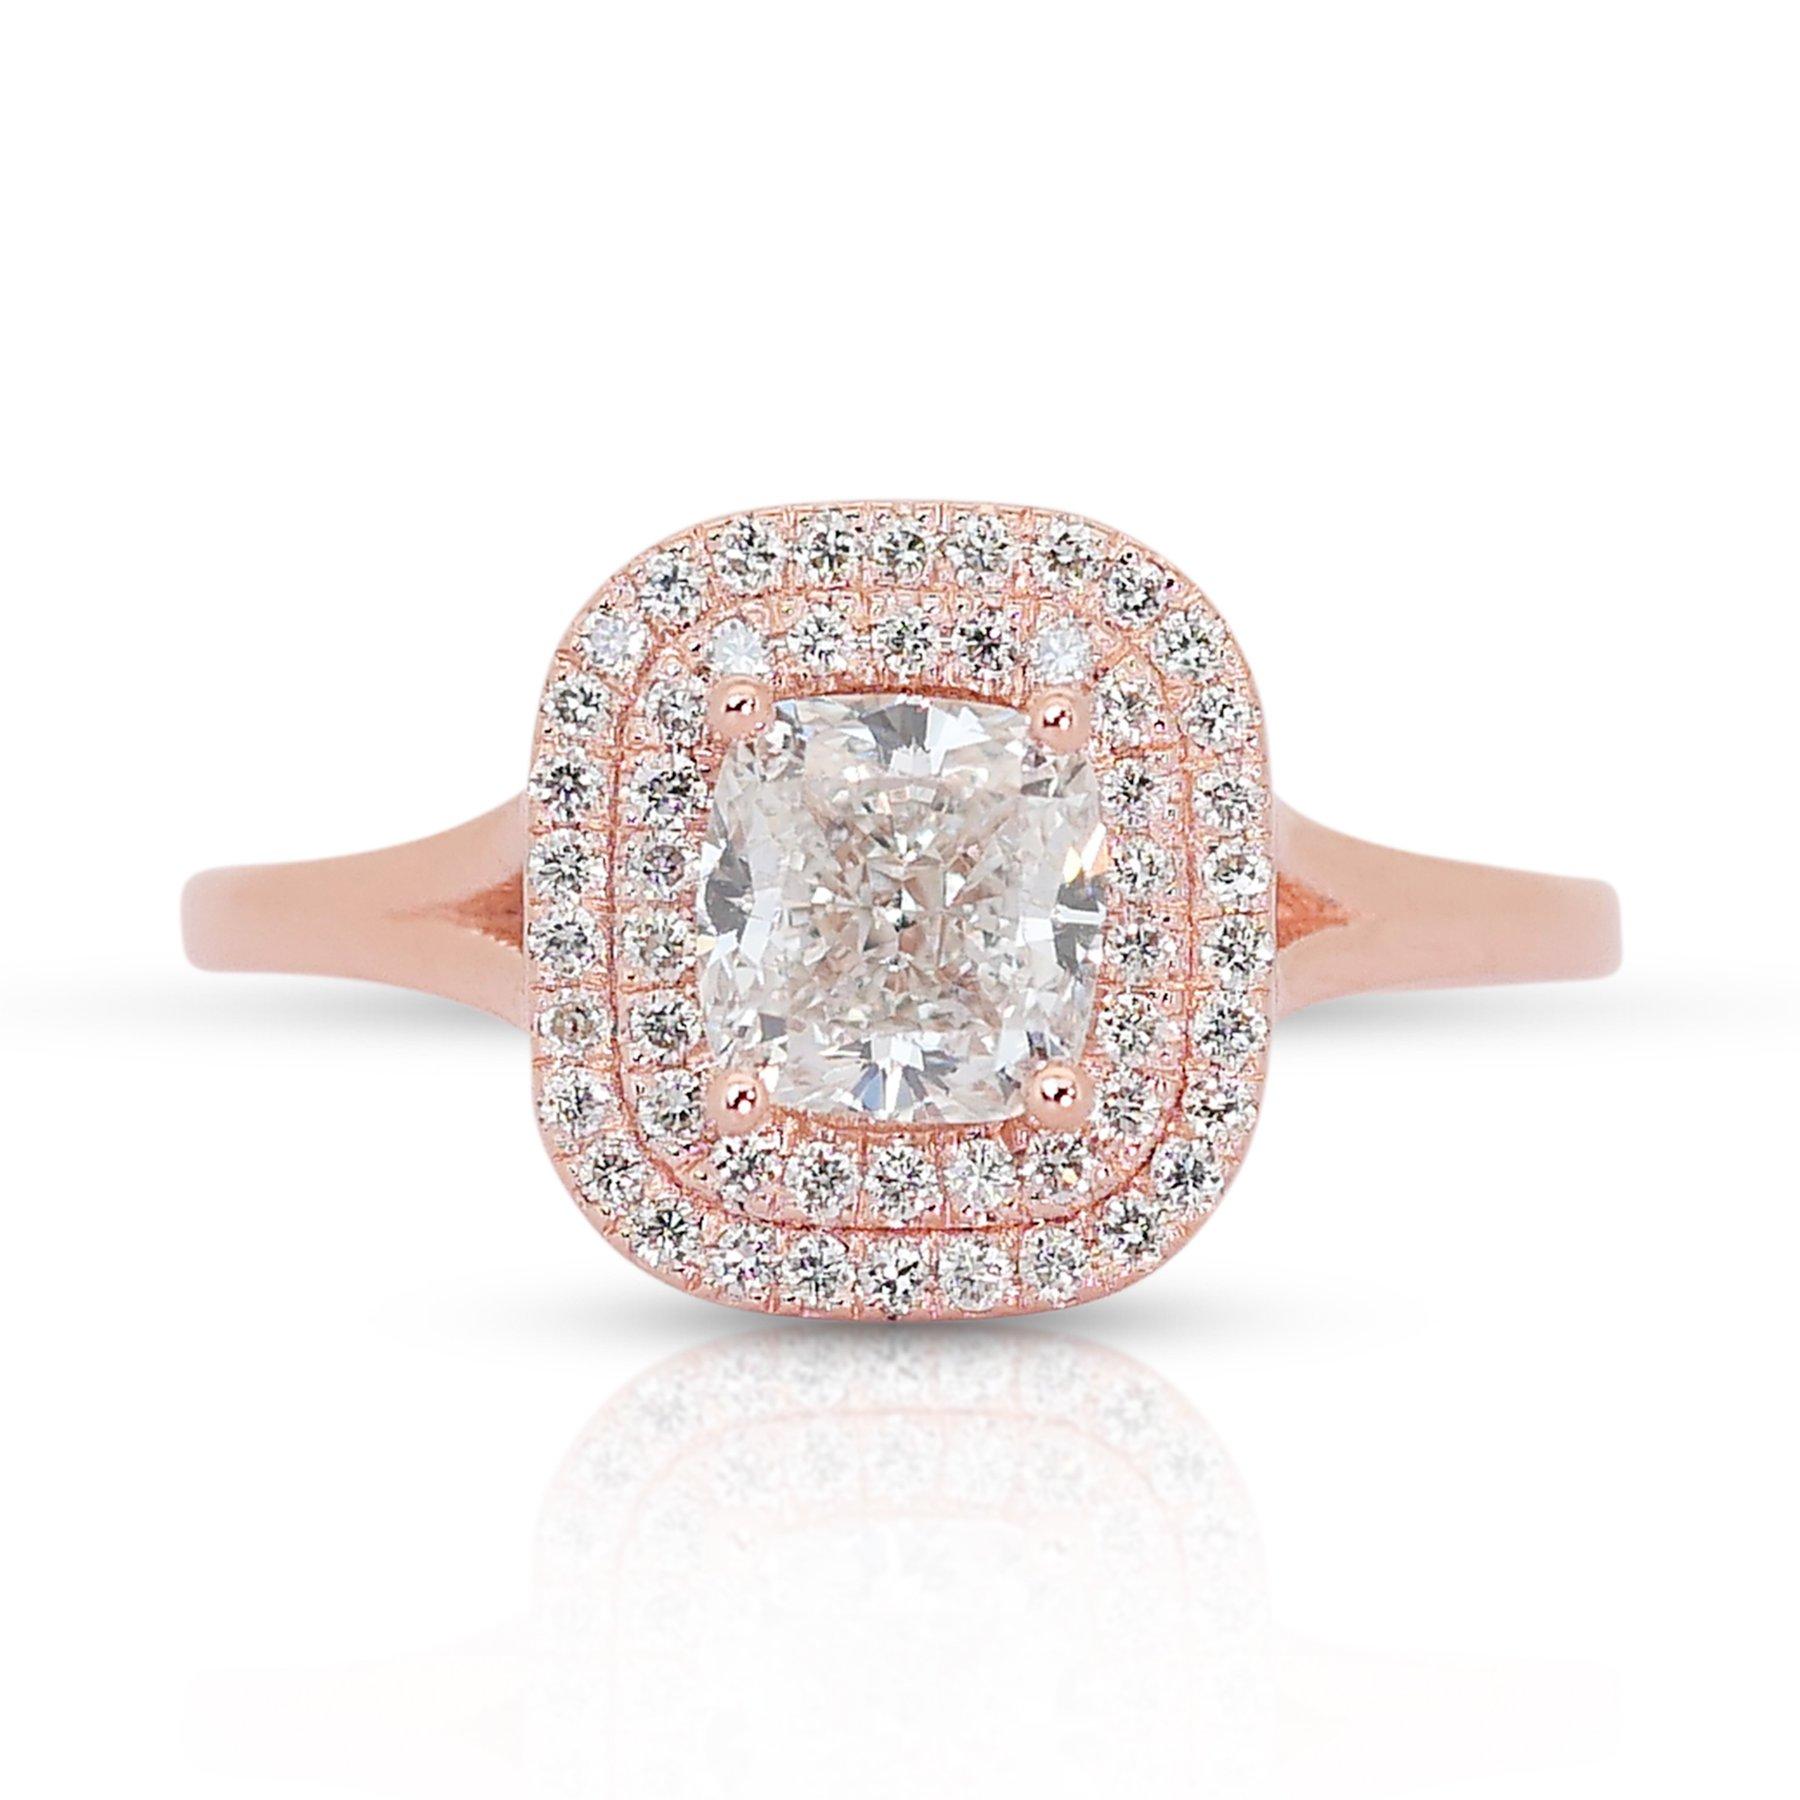 Eleganter 1,41ct Diamanten Double Halo Ring in 18k Rose Gold - GIA zertifiziert

Dieser exquisite, mit Präzision und Eleganz gefertigte Halo-Ring aus 18 Karat Roségold ist mit einem atemberaubenden Diamanten im Kissenschliff von 1,18 Karat besetzt.